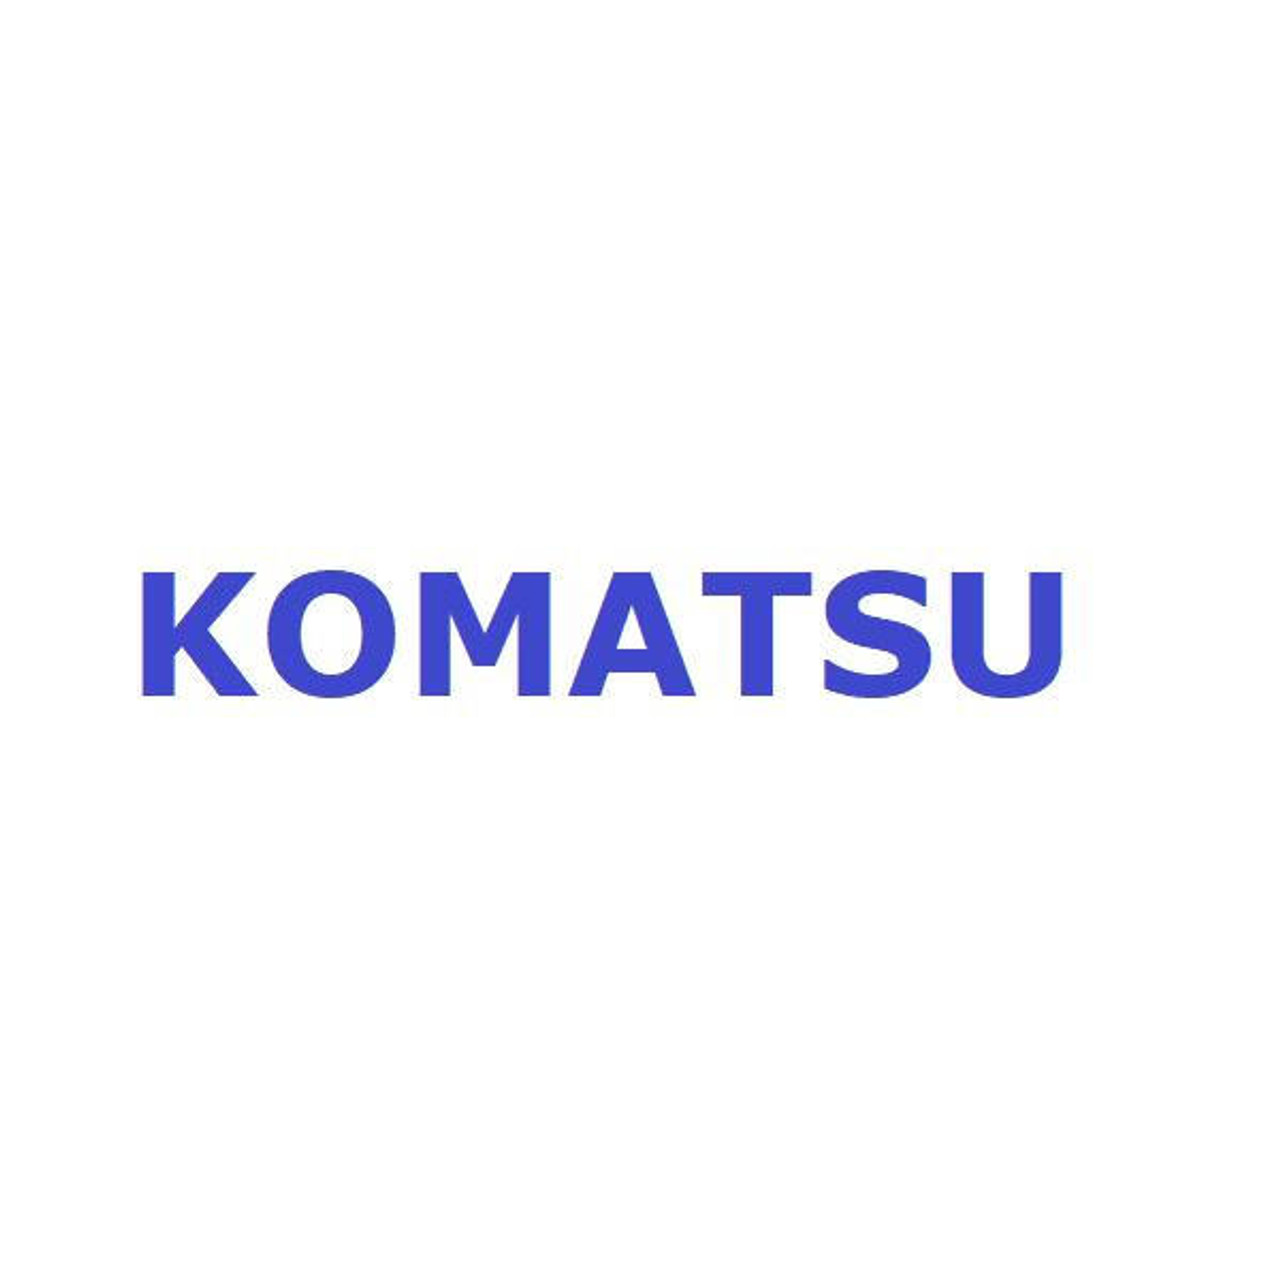 Komatsu Seal # 56D-50-14101K Seal Kit